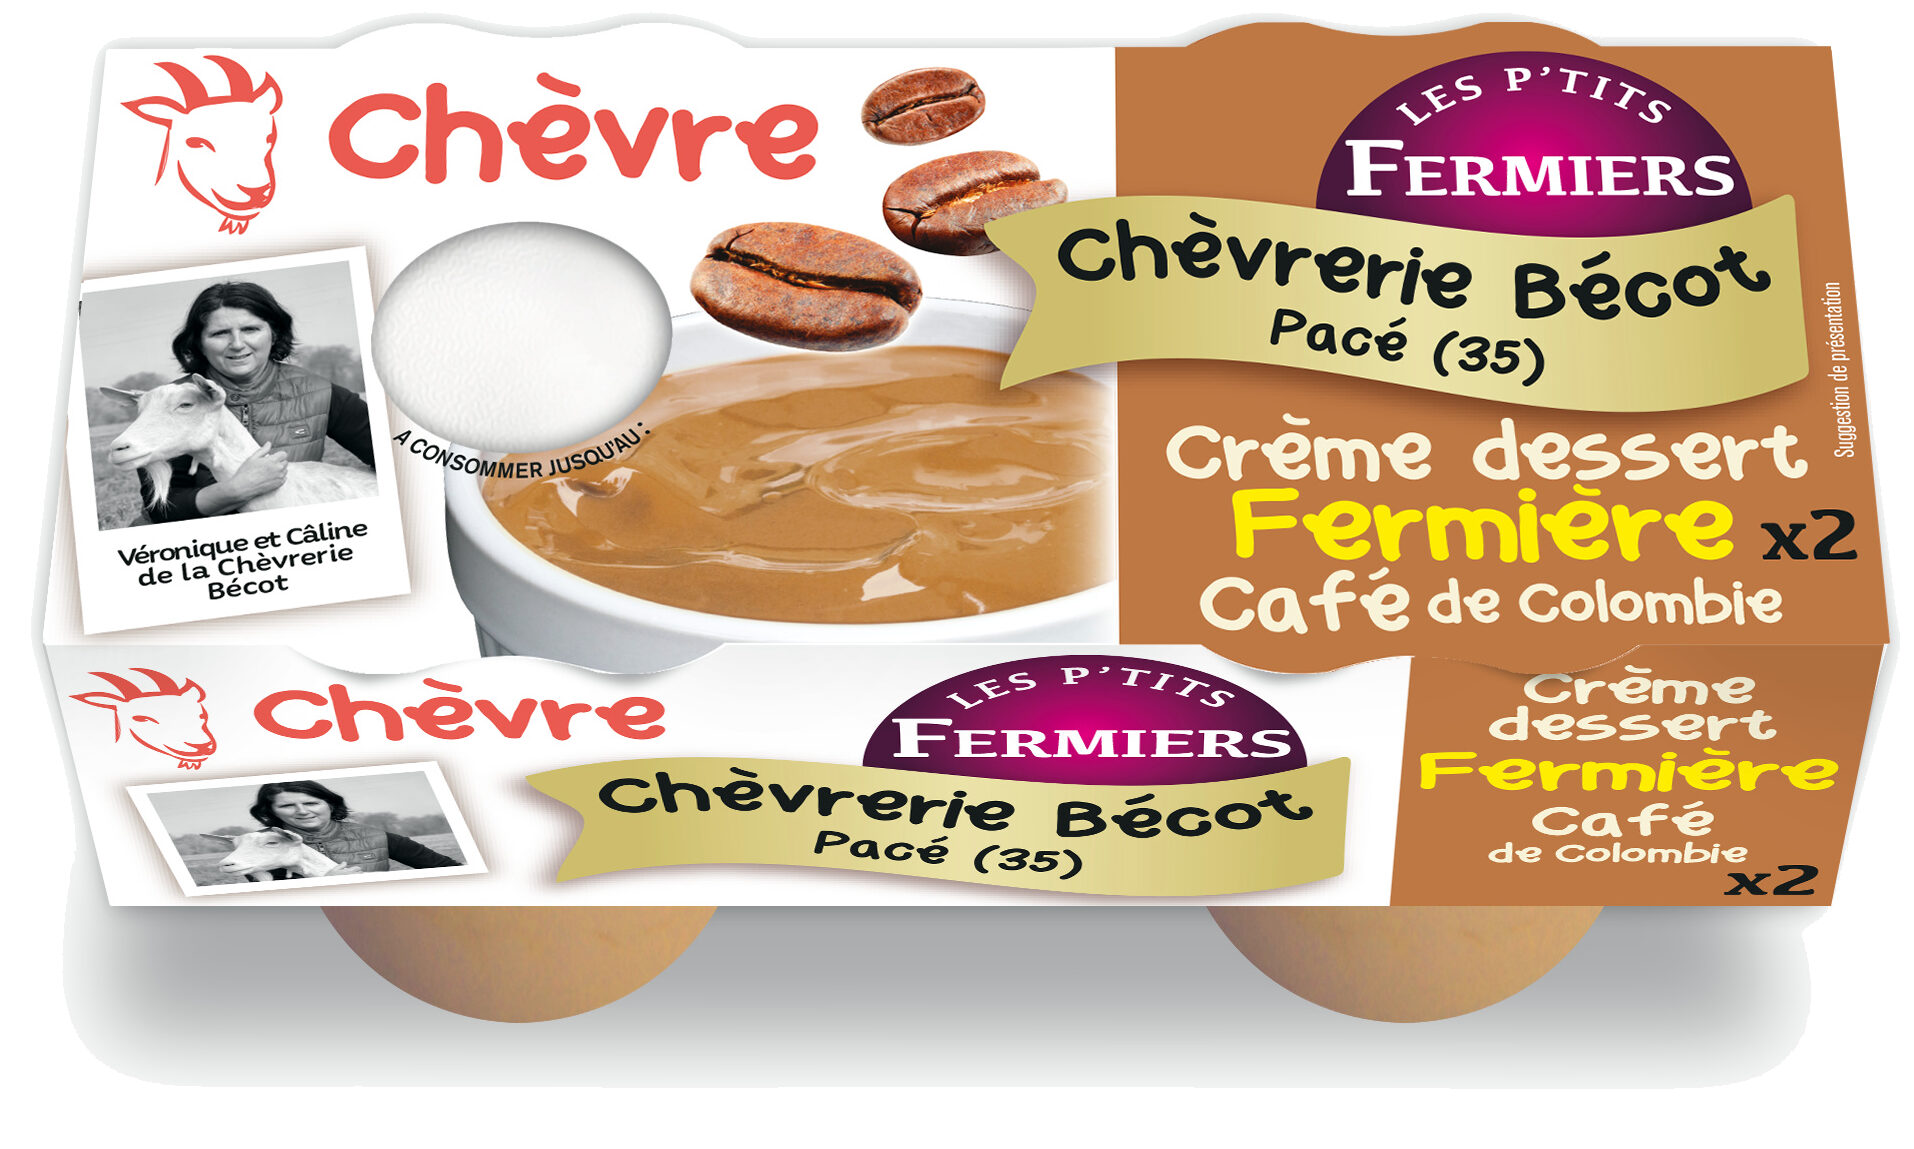 Crème dessert chèvre fermière Café - Product - fr